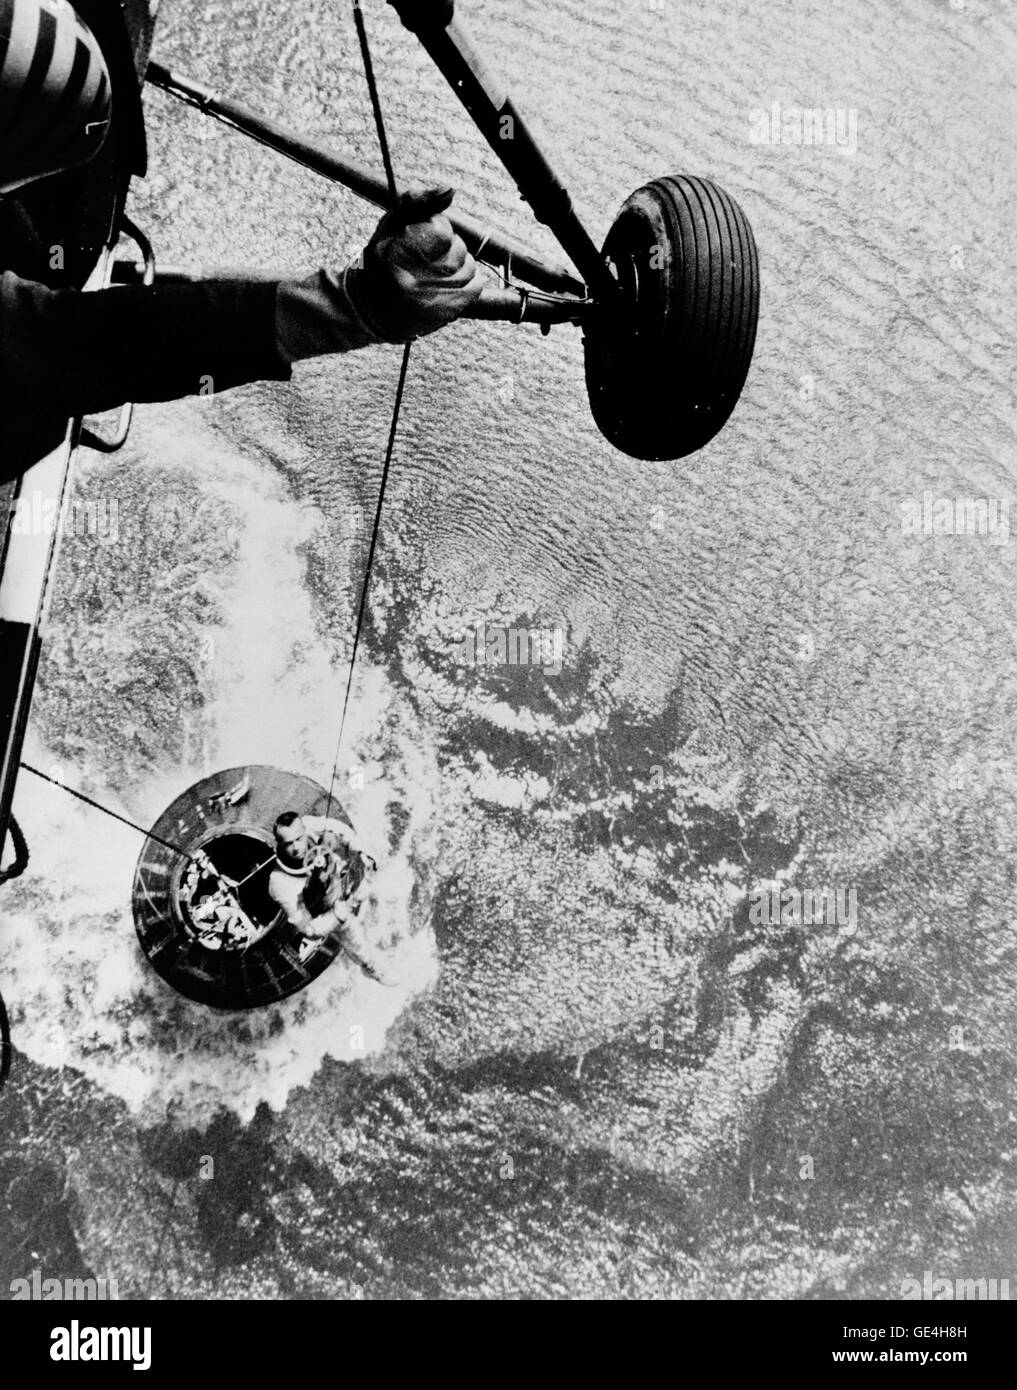 Astronaut Alan B. Shepard Jr., Pilot der suborbitalen Raumflug von Mercury-Redstone 3 (MR-3) wird von einem Hubschrauber aus der USS Lake Champlain während Recovery-Vorgänge im westlichen Atlantik abgerufen. Shepard und das Mercury-Raumschiff bezeichnet die "Freedom 7" (schwebend im Wasser unten) wurden auf das Deck des Schiffes Erholung innerhalb von 11 Minuten Wasserung geflogen. MR-3 war die erste amerikanische Raumfahrt-Mission. Die Raumsonde erreicht eine maximale Geschwindigkeit von 5.180 Meilen pro Stunde, erreicht eine Höhe von 116 1/2 Landmeilen, und landete 302 Landmeilen isst von Cape Canaver Stockfoto